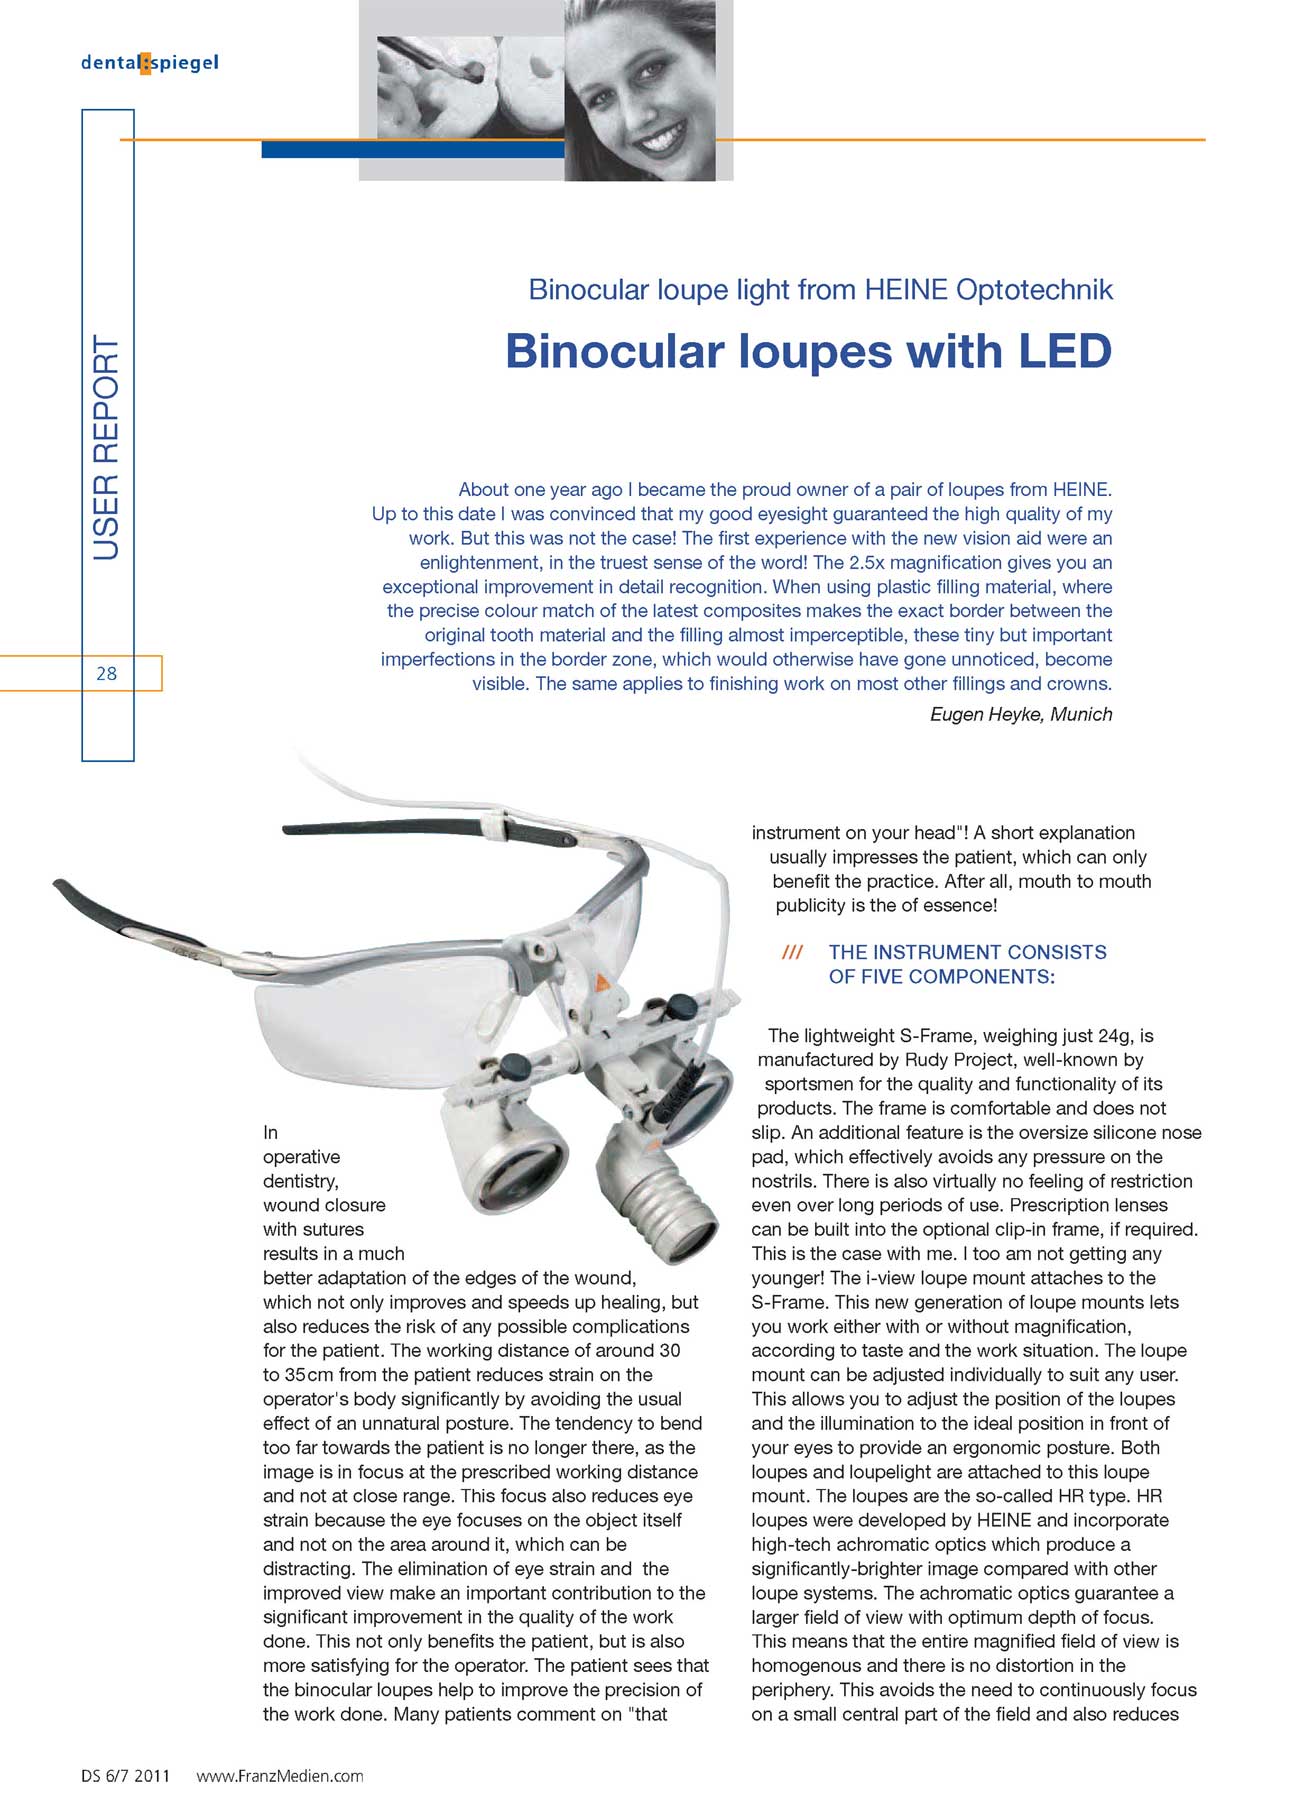 Отзыв Eugen Heyke о бинокулярной лупе со светодиодным (LED) освещением (оригинал)